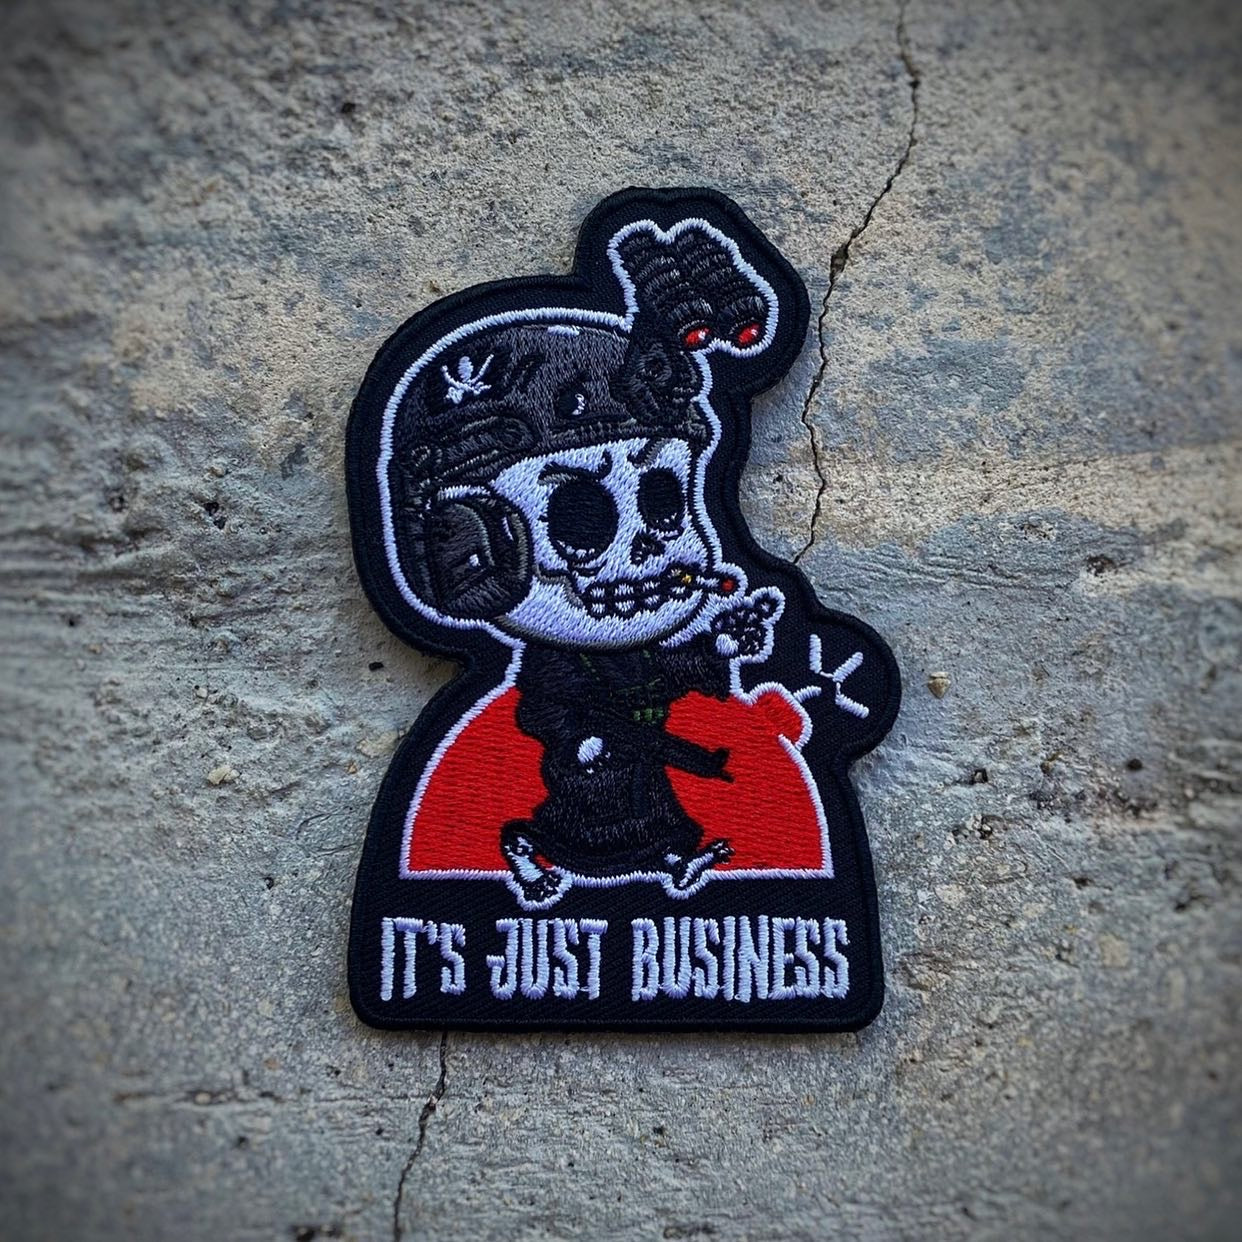 Dangerous Goods® Little Goons “It’s Just Business” Grim Reaper Patch